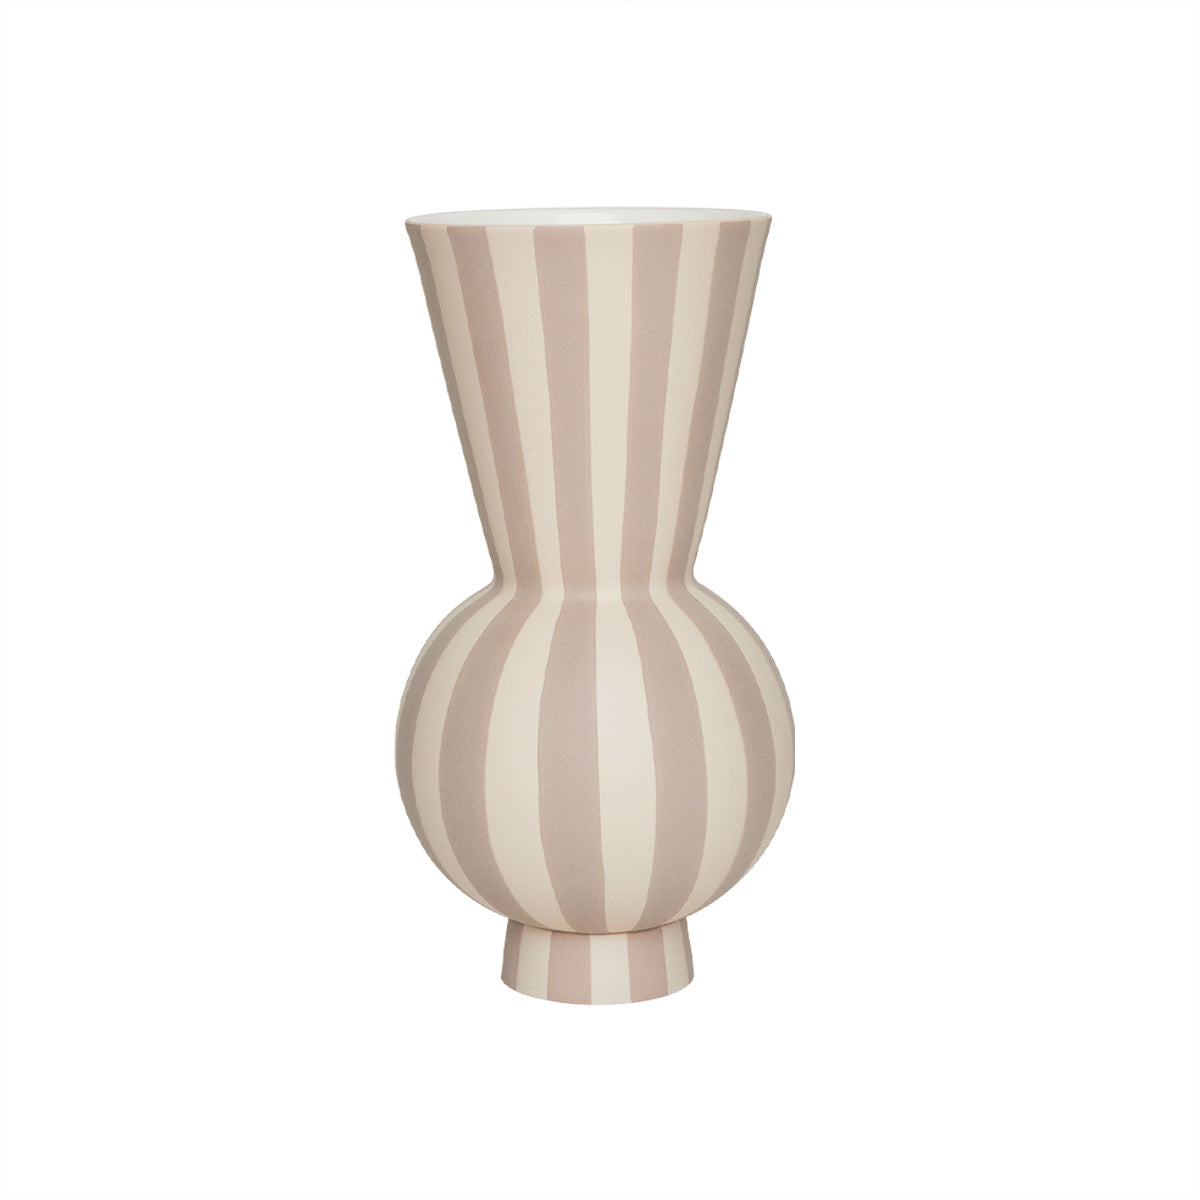 OYOY LIVING Toppu Vase - Round Vase 306 Clay